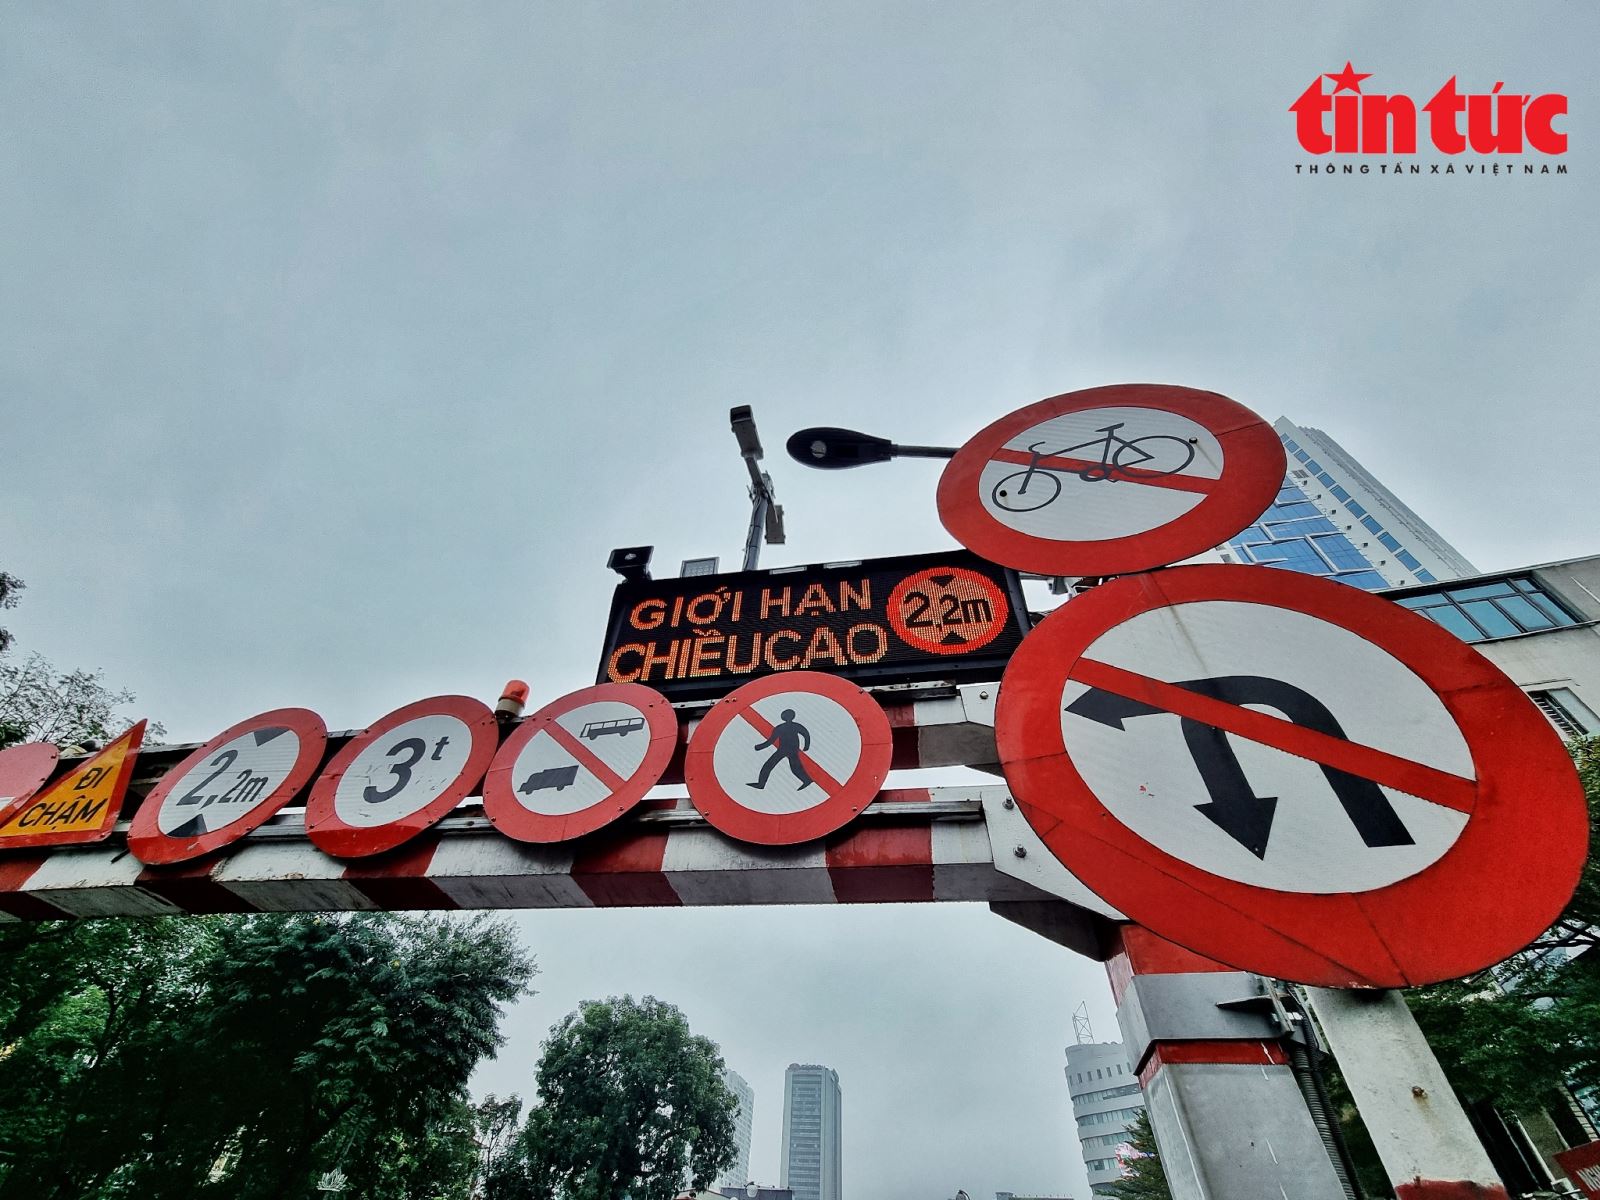 Cận cảnh biển báo thông minh tại các 'điểm đen' giao thông ở Hà Nội